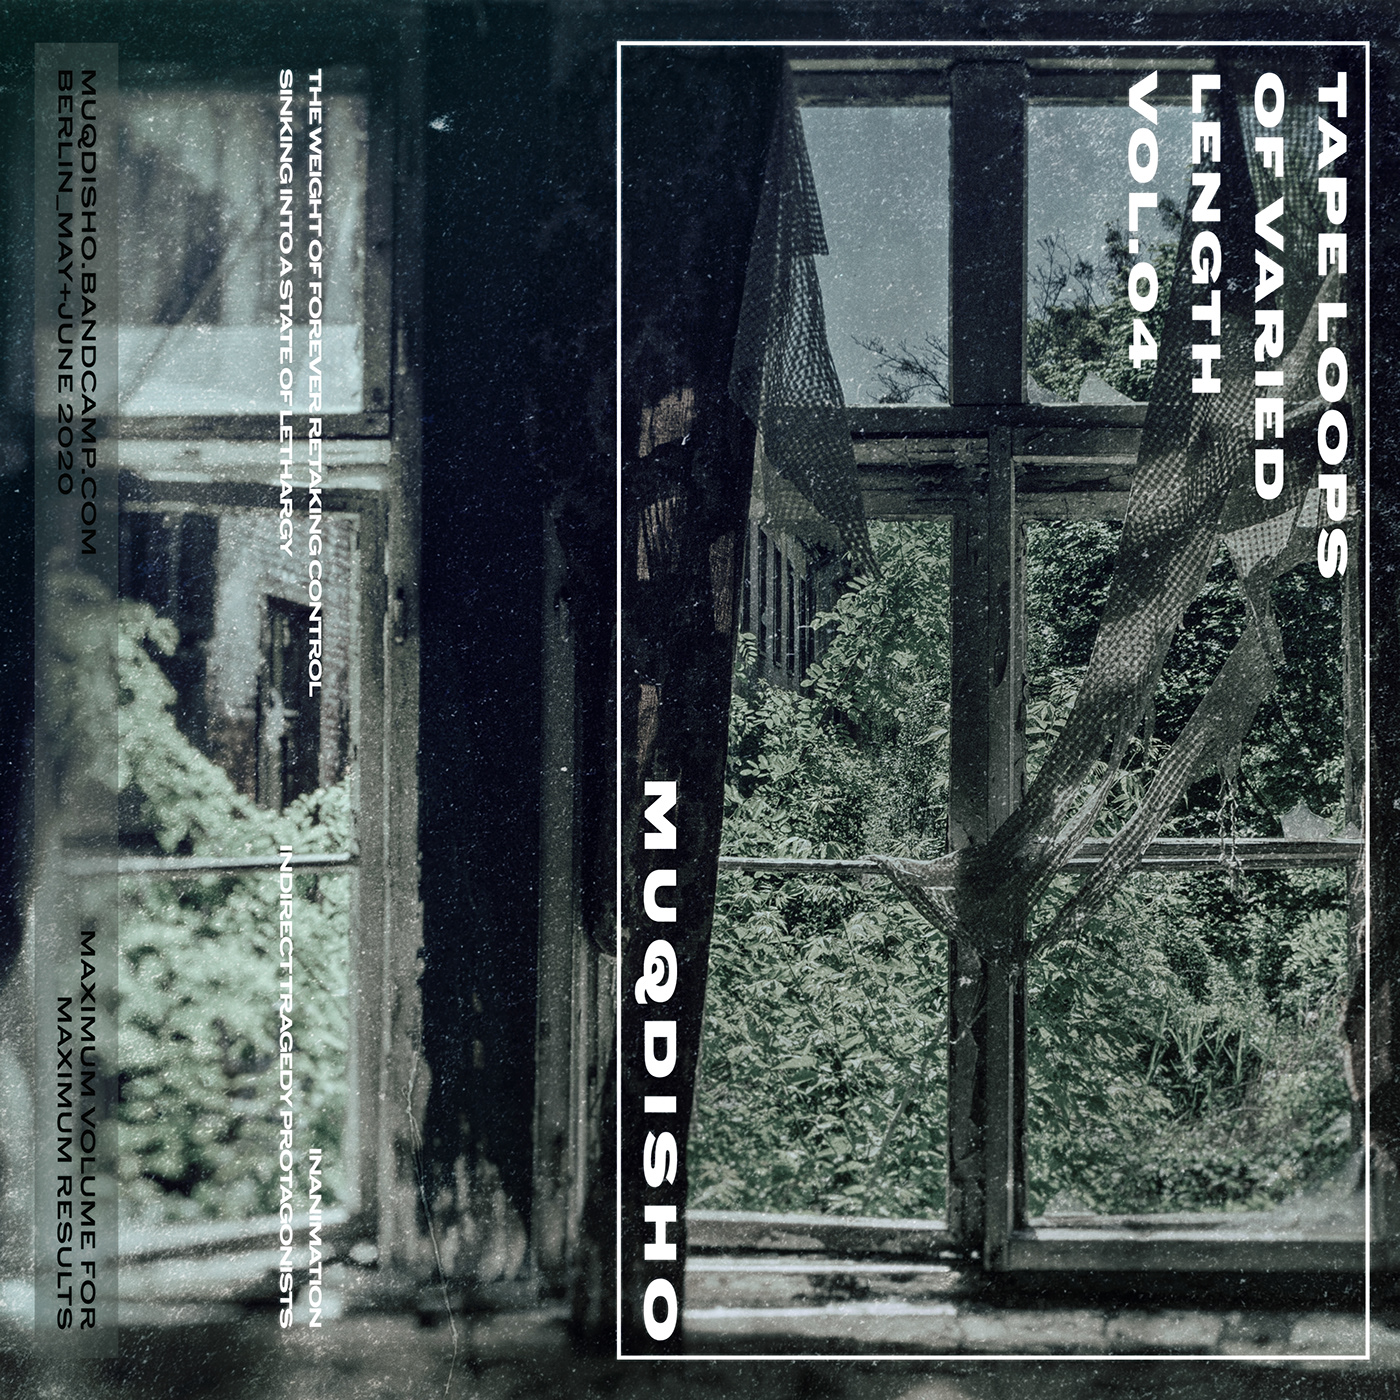 Album album cover Ambient berlin muqdisho music noise sounds